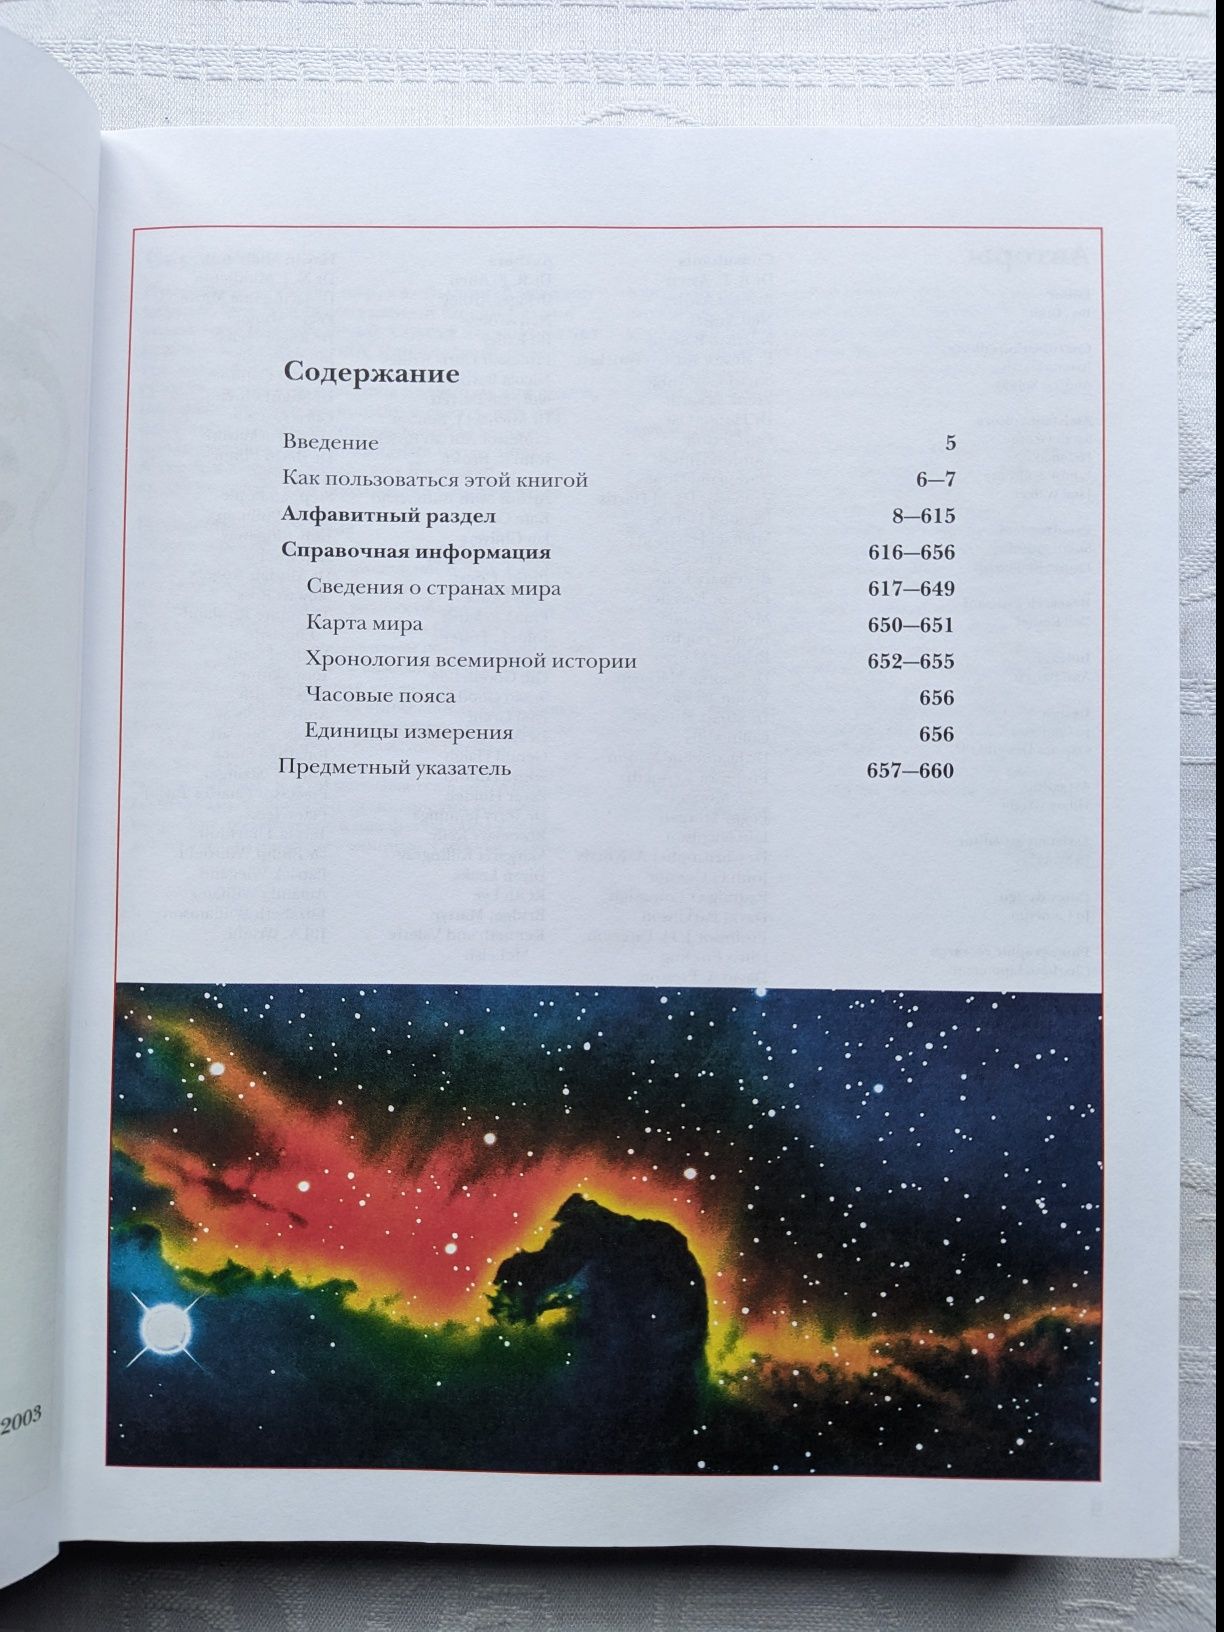 Большая энциклопедия школьника